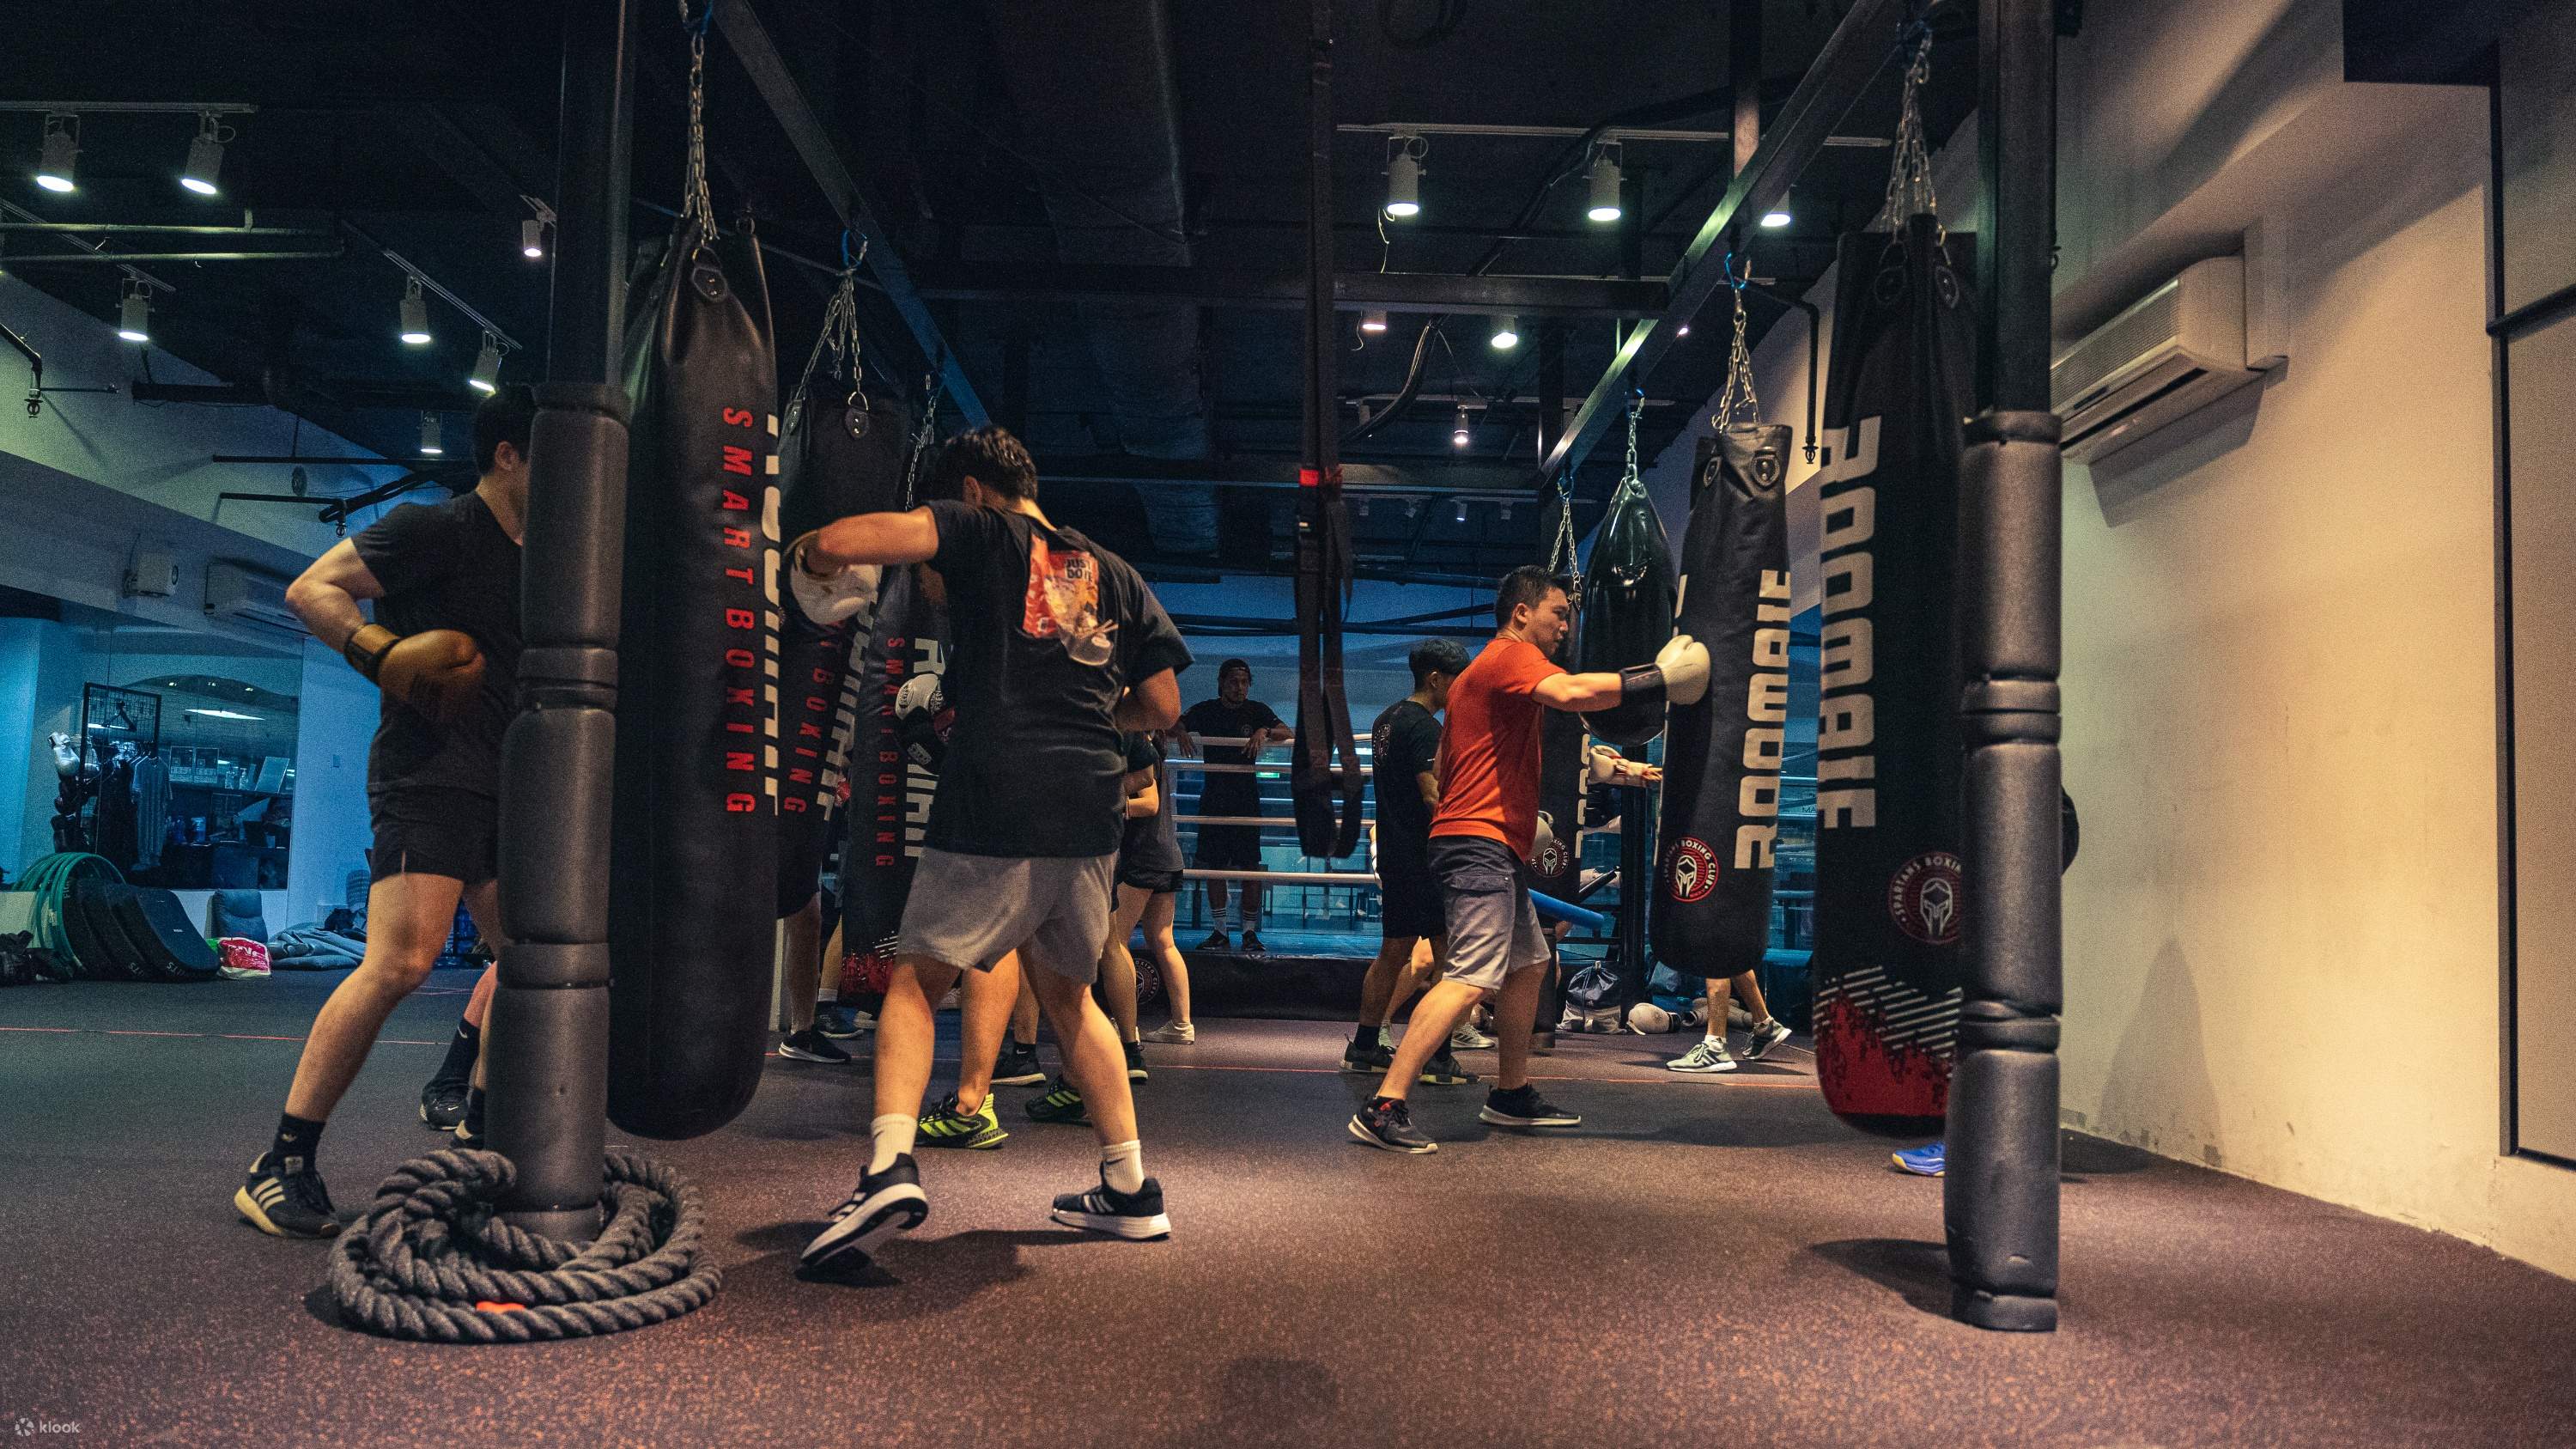 Spartans Boxing Club Singapur - Klook, Vereinigte Staaten